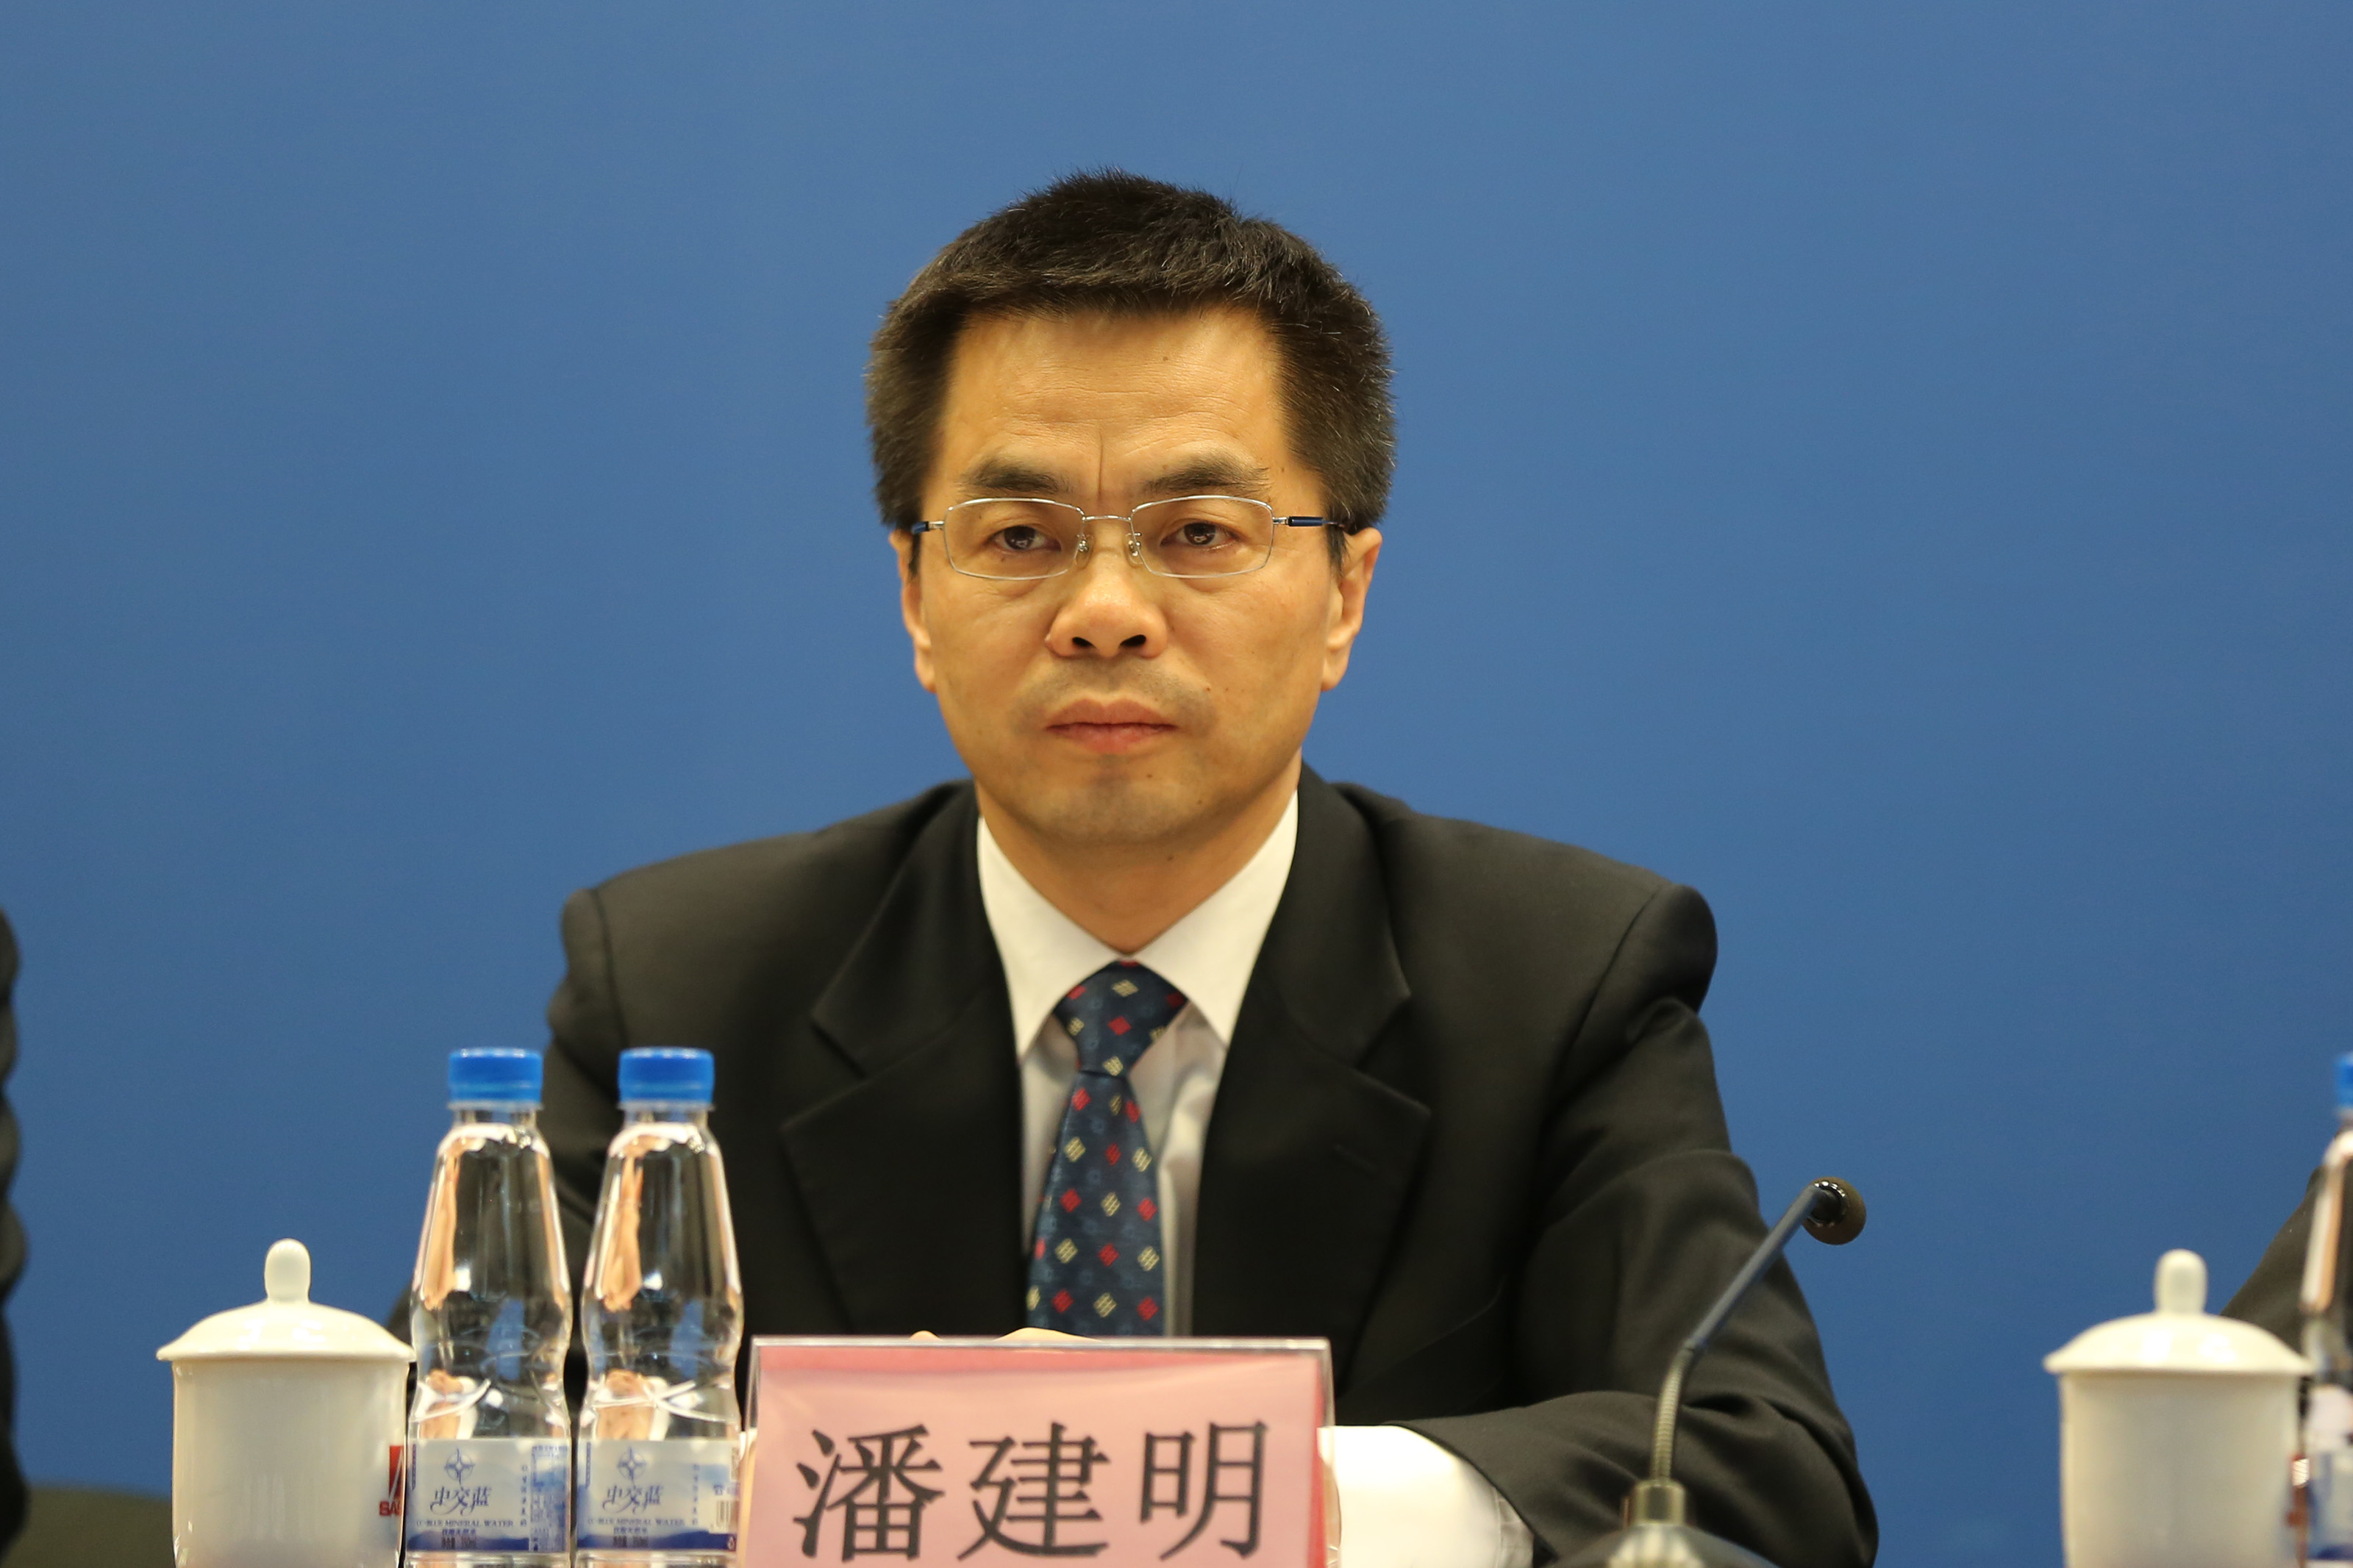 中国核工业集团公司董事会秘书、新闻发言人潘建明出席发布会。